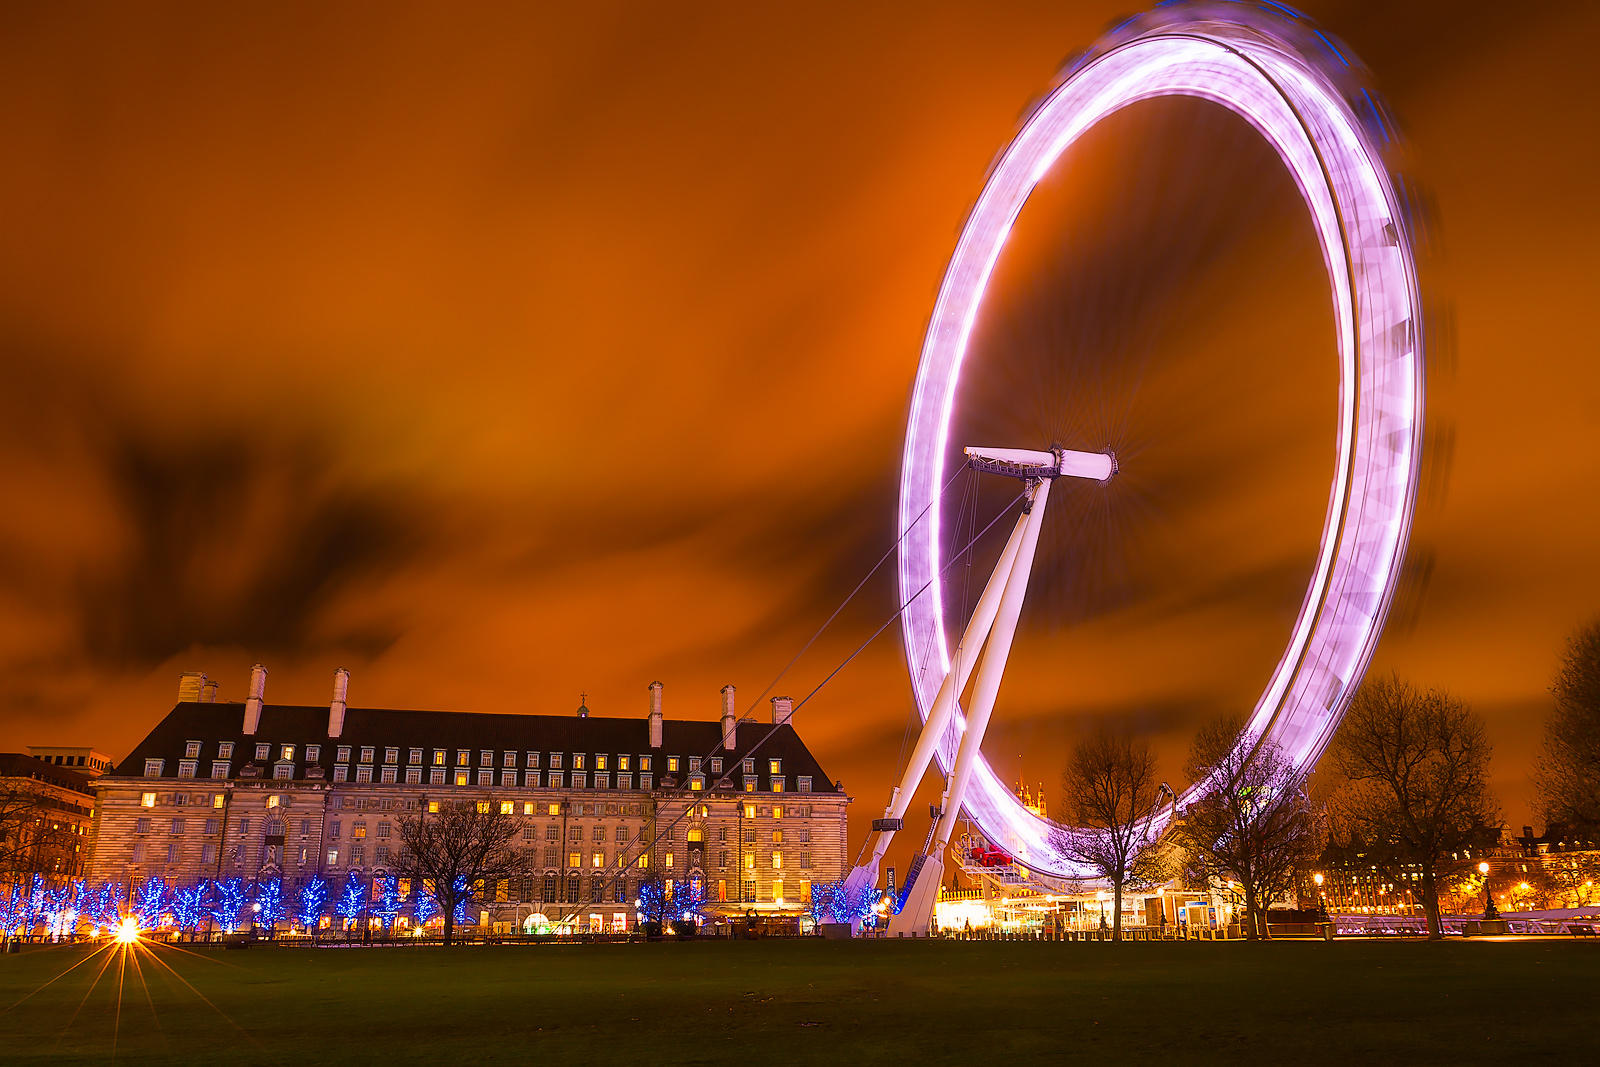 London Eye spinning at night